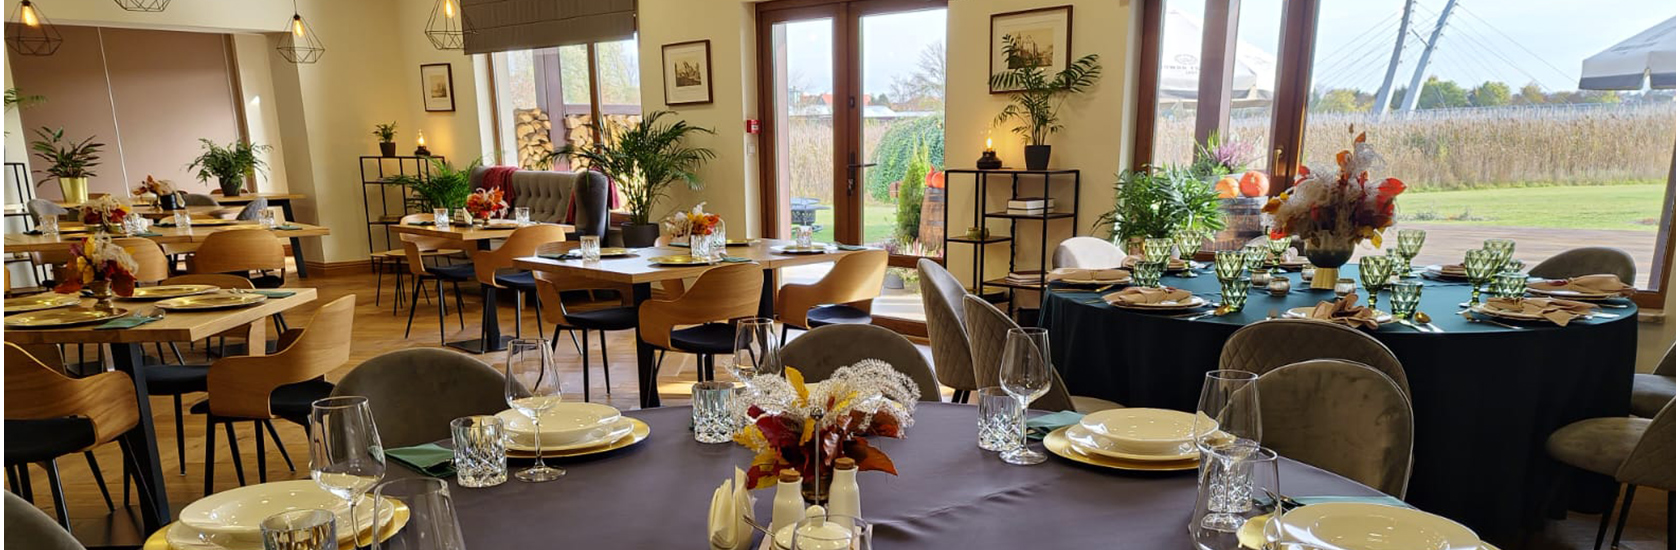 Restauracja La Brasserie - Przylądek Daglezja w Kórniku